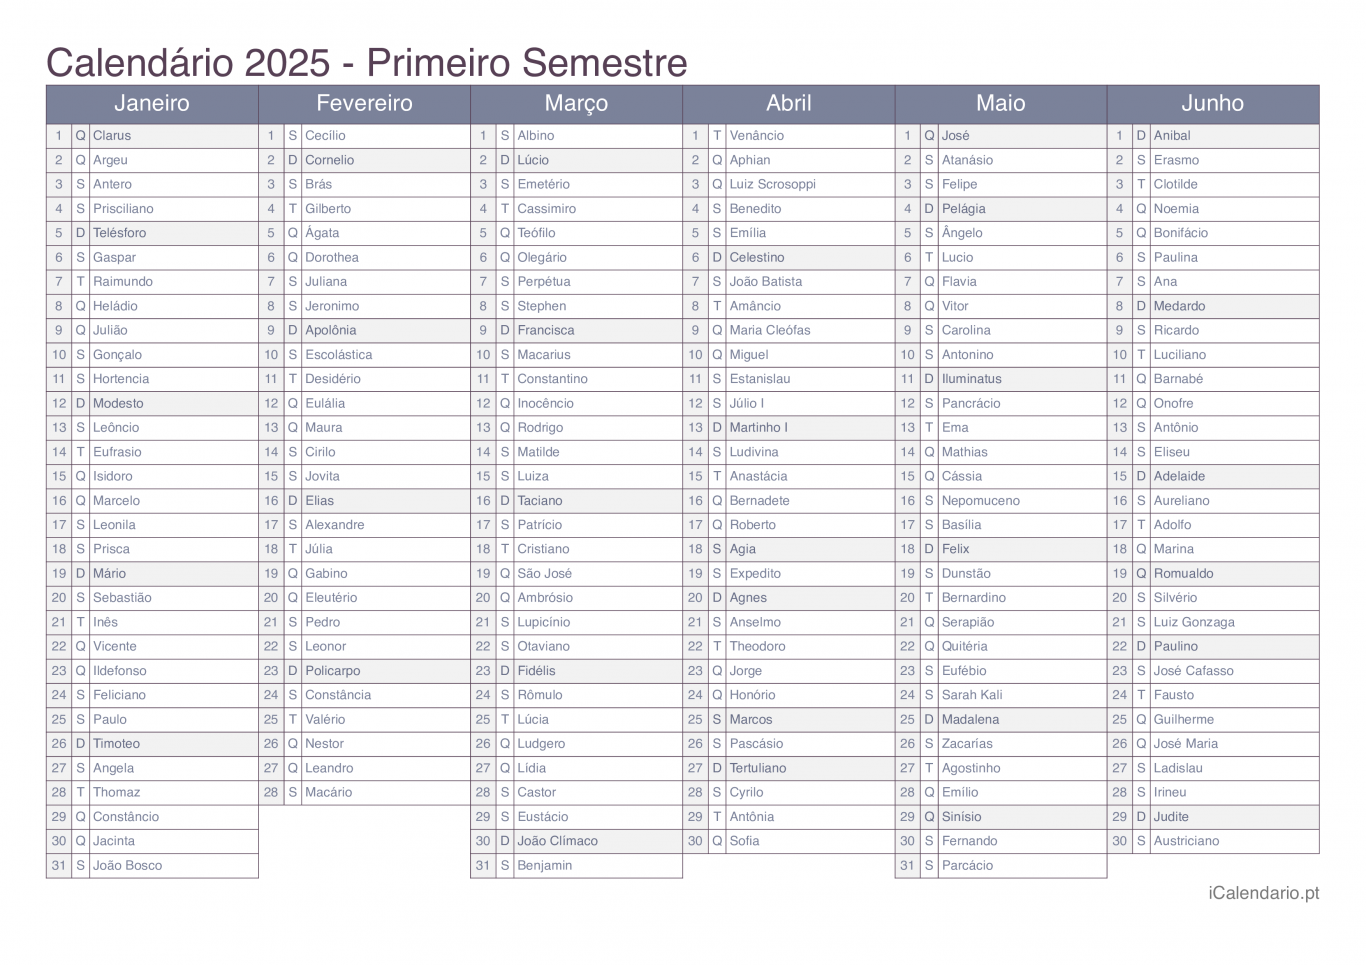 Calendário por semestre 2025 com festa do dia - Office